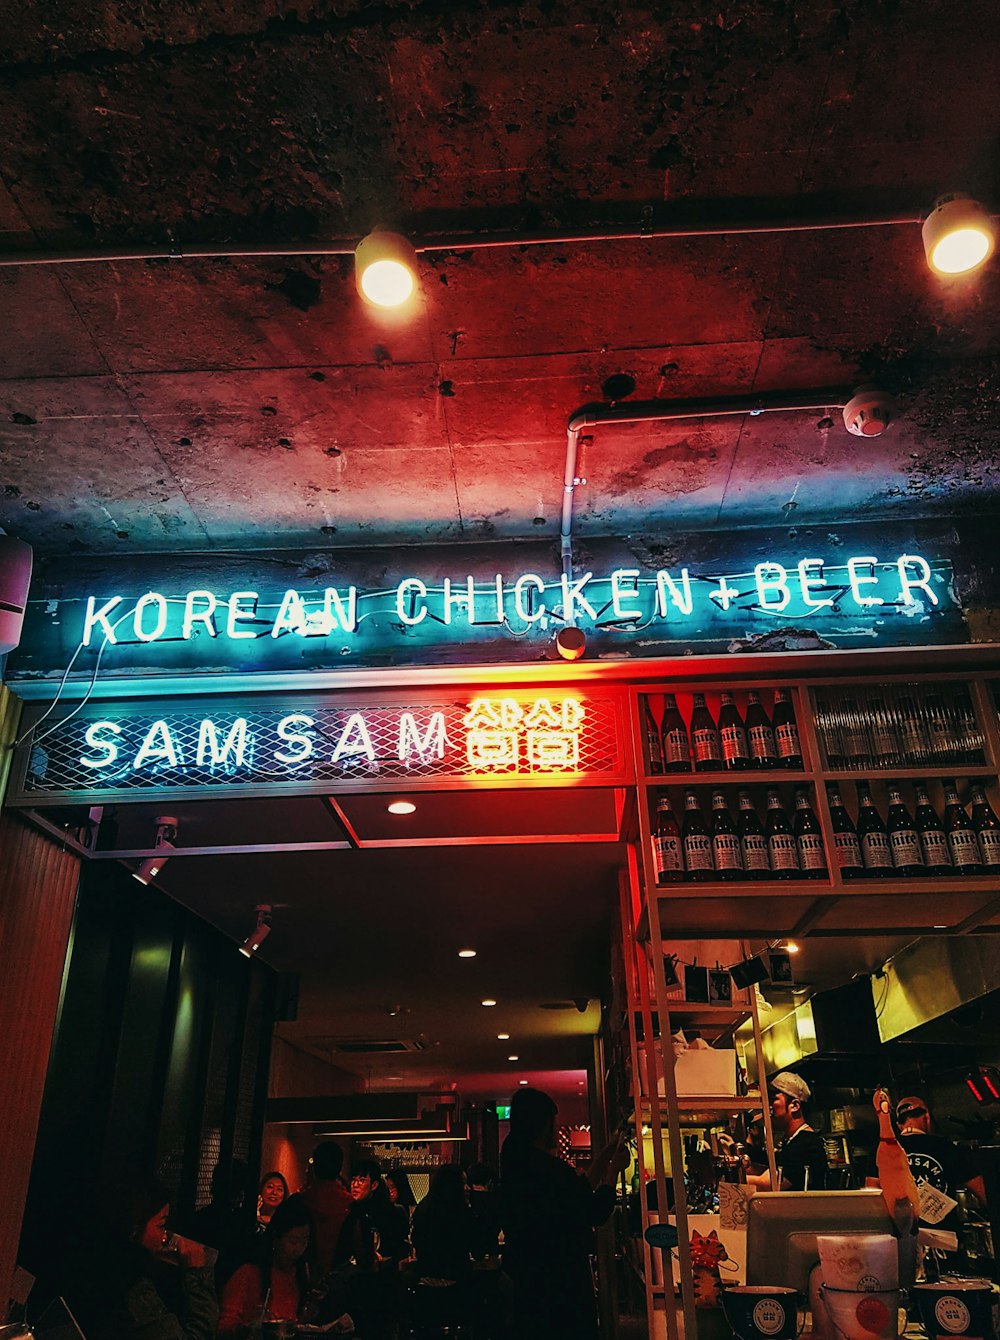 Korean Chicken Beer LED signage